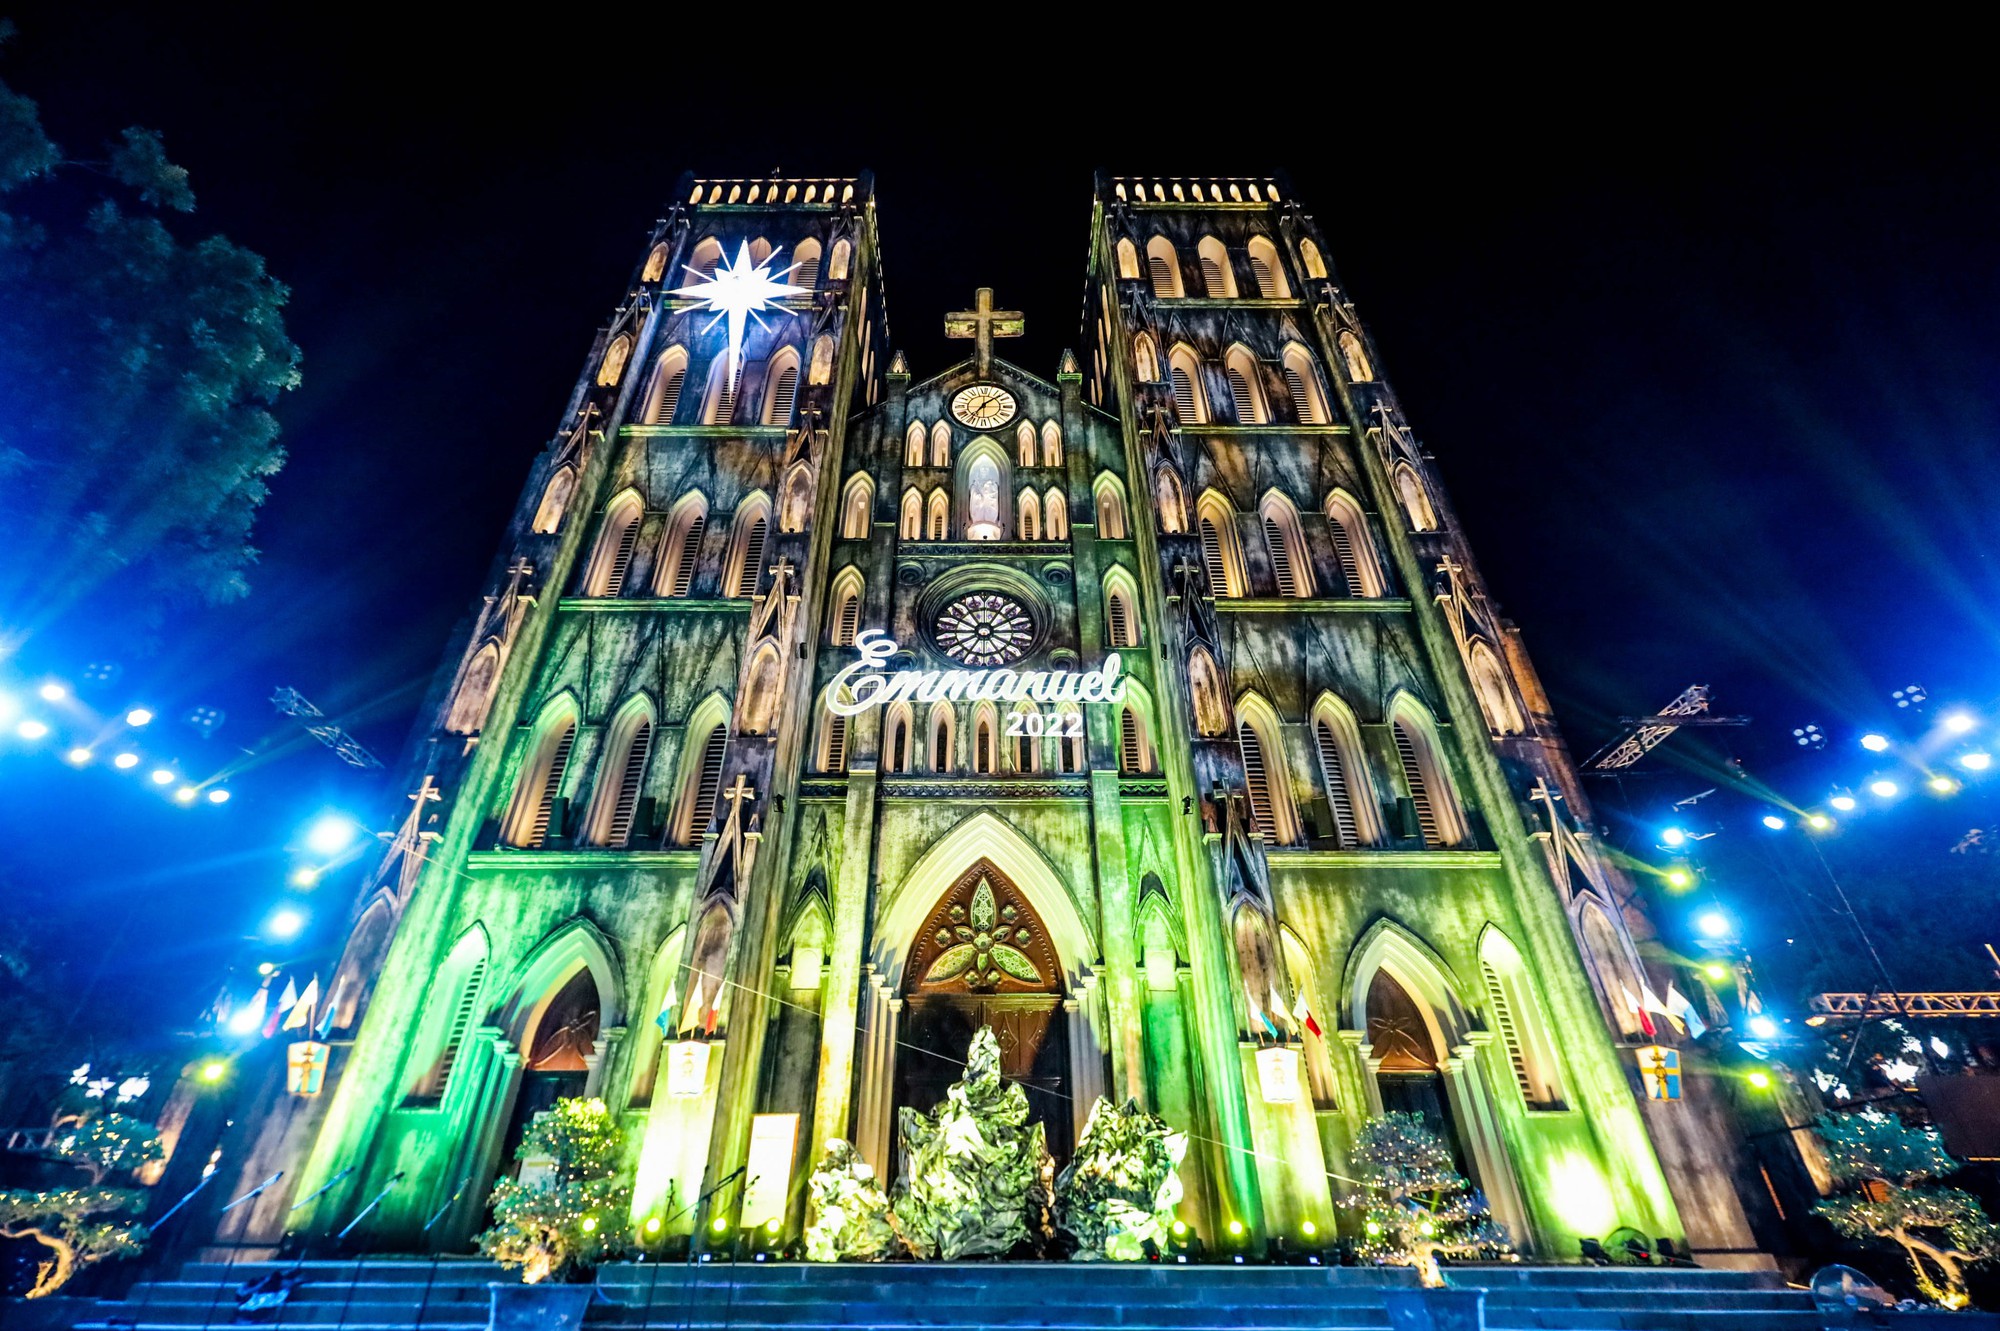 Hãy cùng chiêm ngưỡng những bức ảnh Giáng sinh tuyệt đẹp tại Nhà thờ lớn Hà Nội. Tòa nhà rực rỡ lung linh trong những luồng sáng đèn đỏ rực rỡ, thật là một bức tranh noel tuyệt vời.